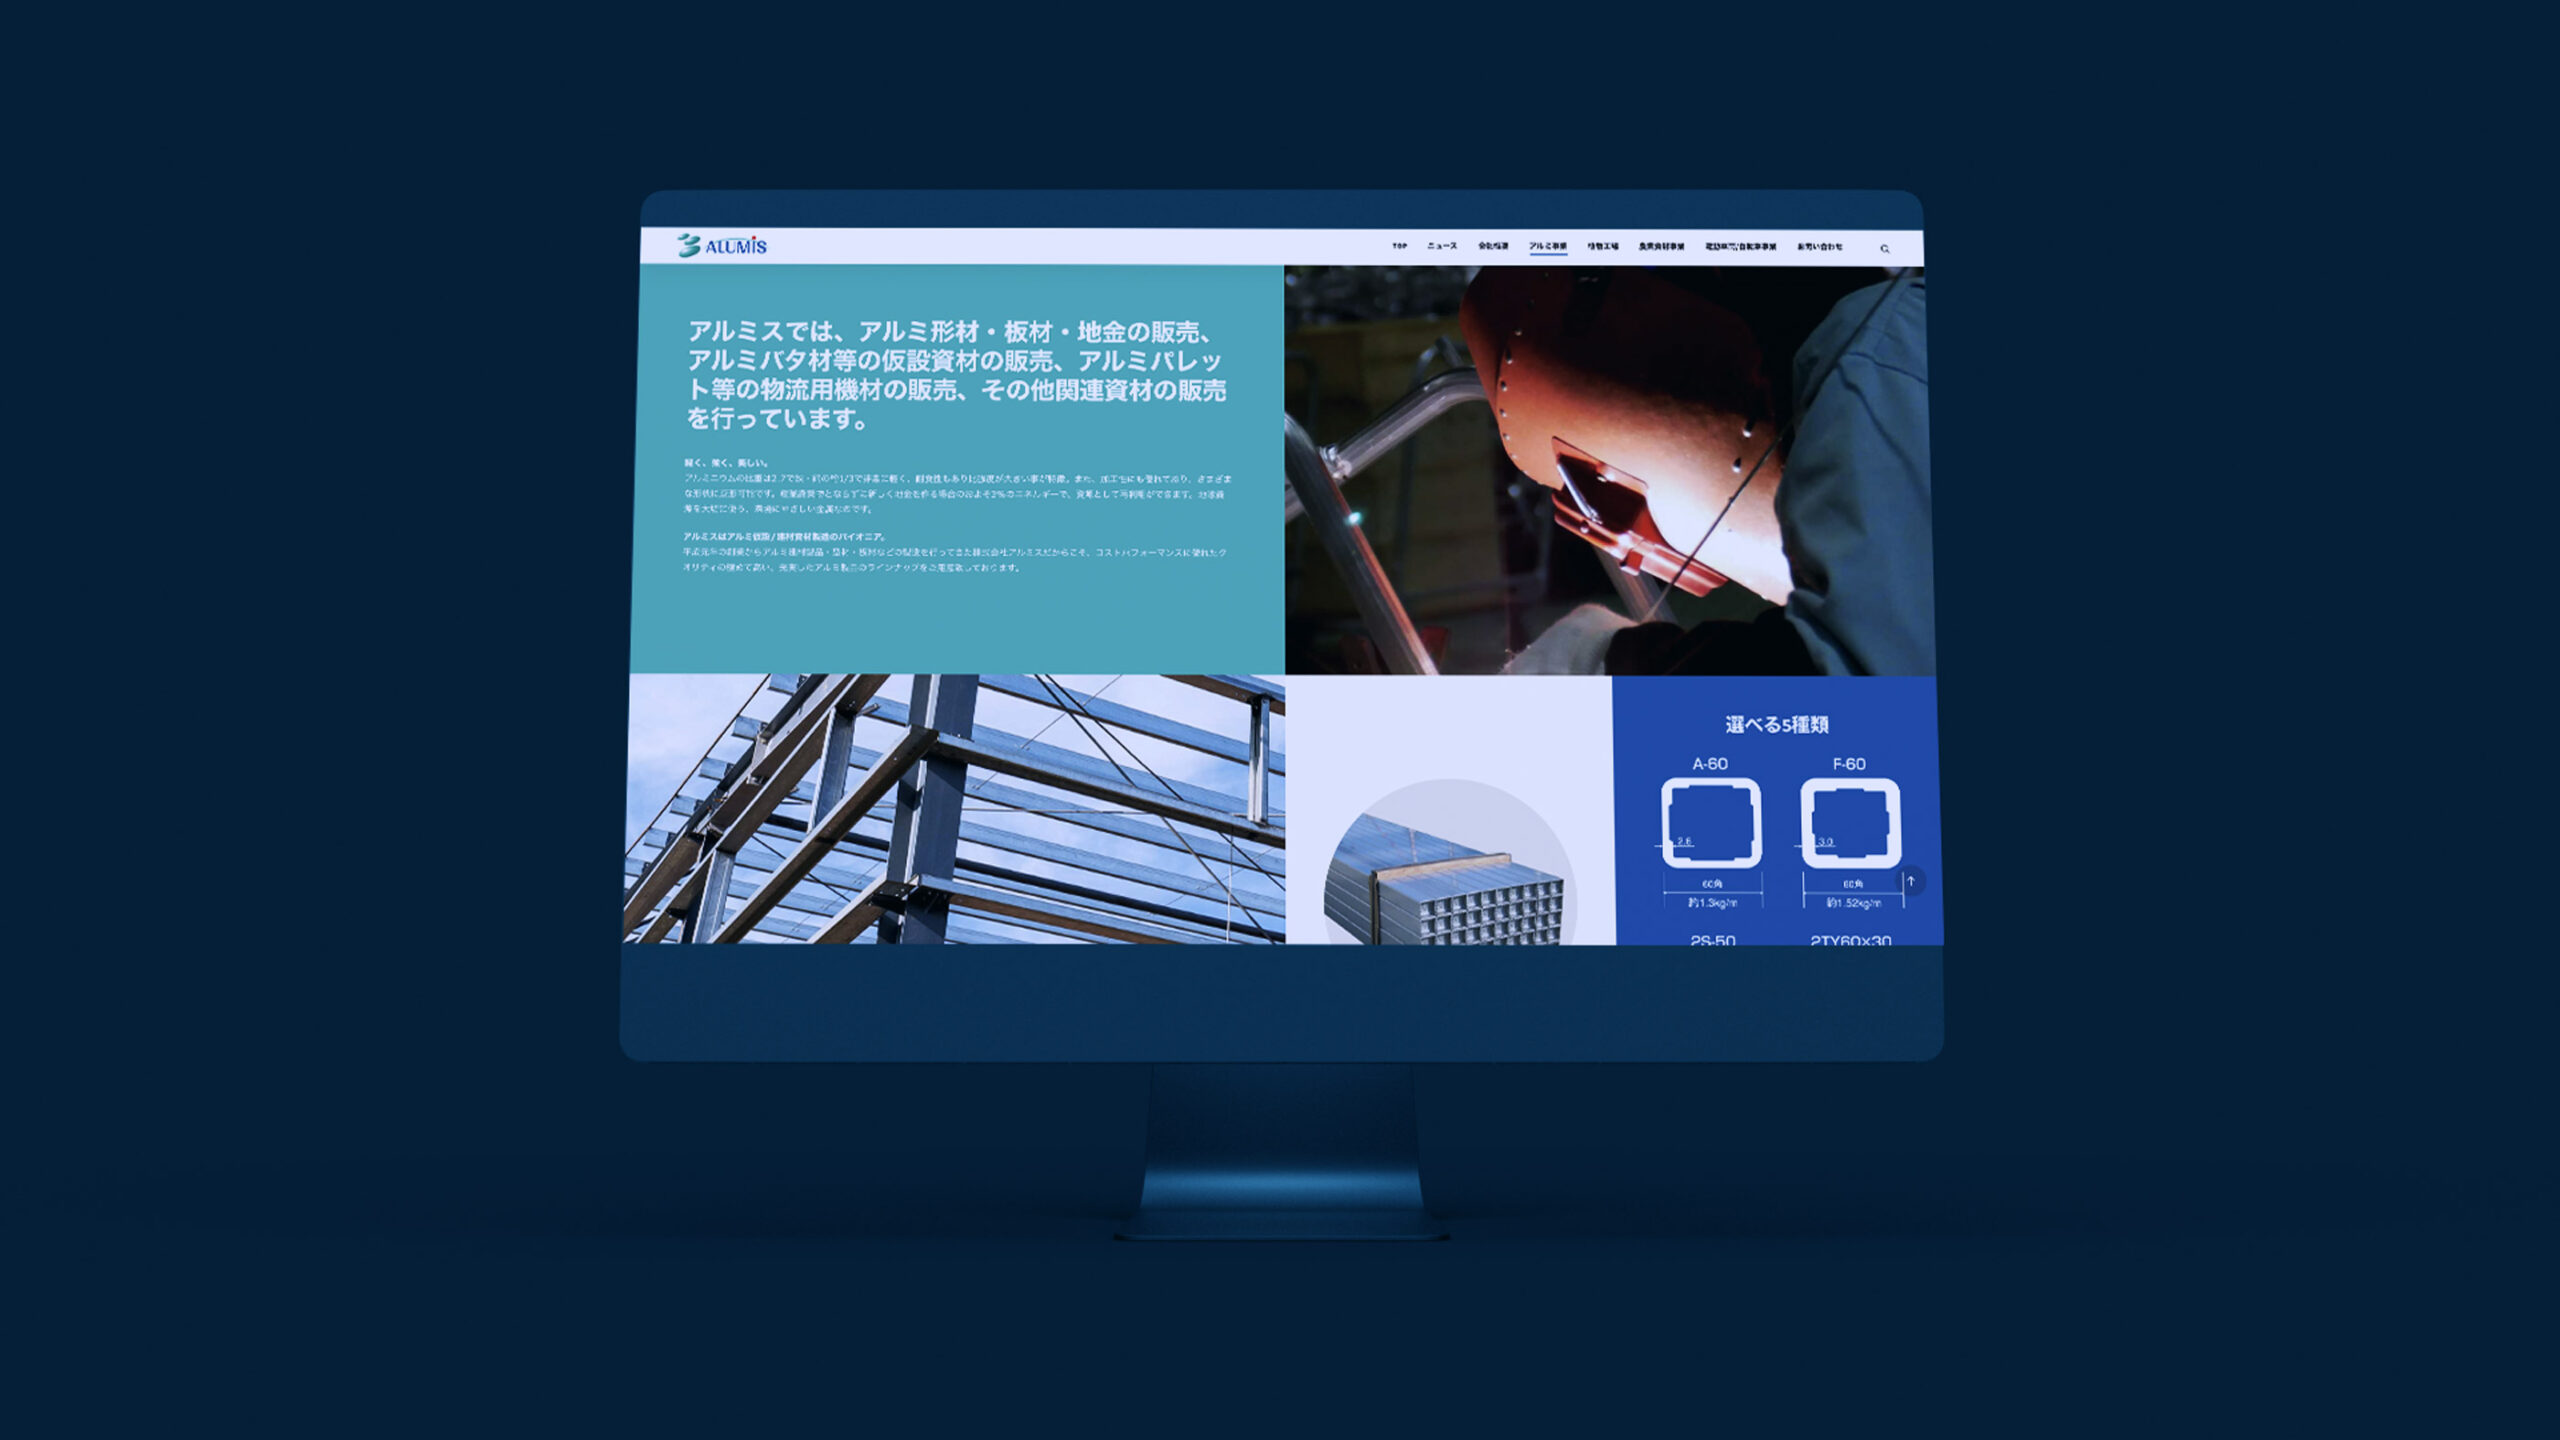 株式会社アルミス佐賀本社のアルミ資材紹介ページウェブデザインがデスクトップパソコンに表示されているスティルライフグラフィック写真